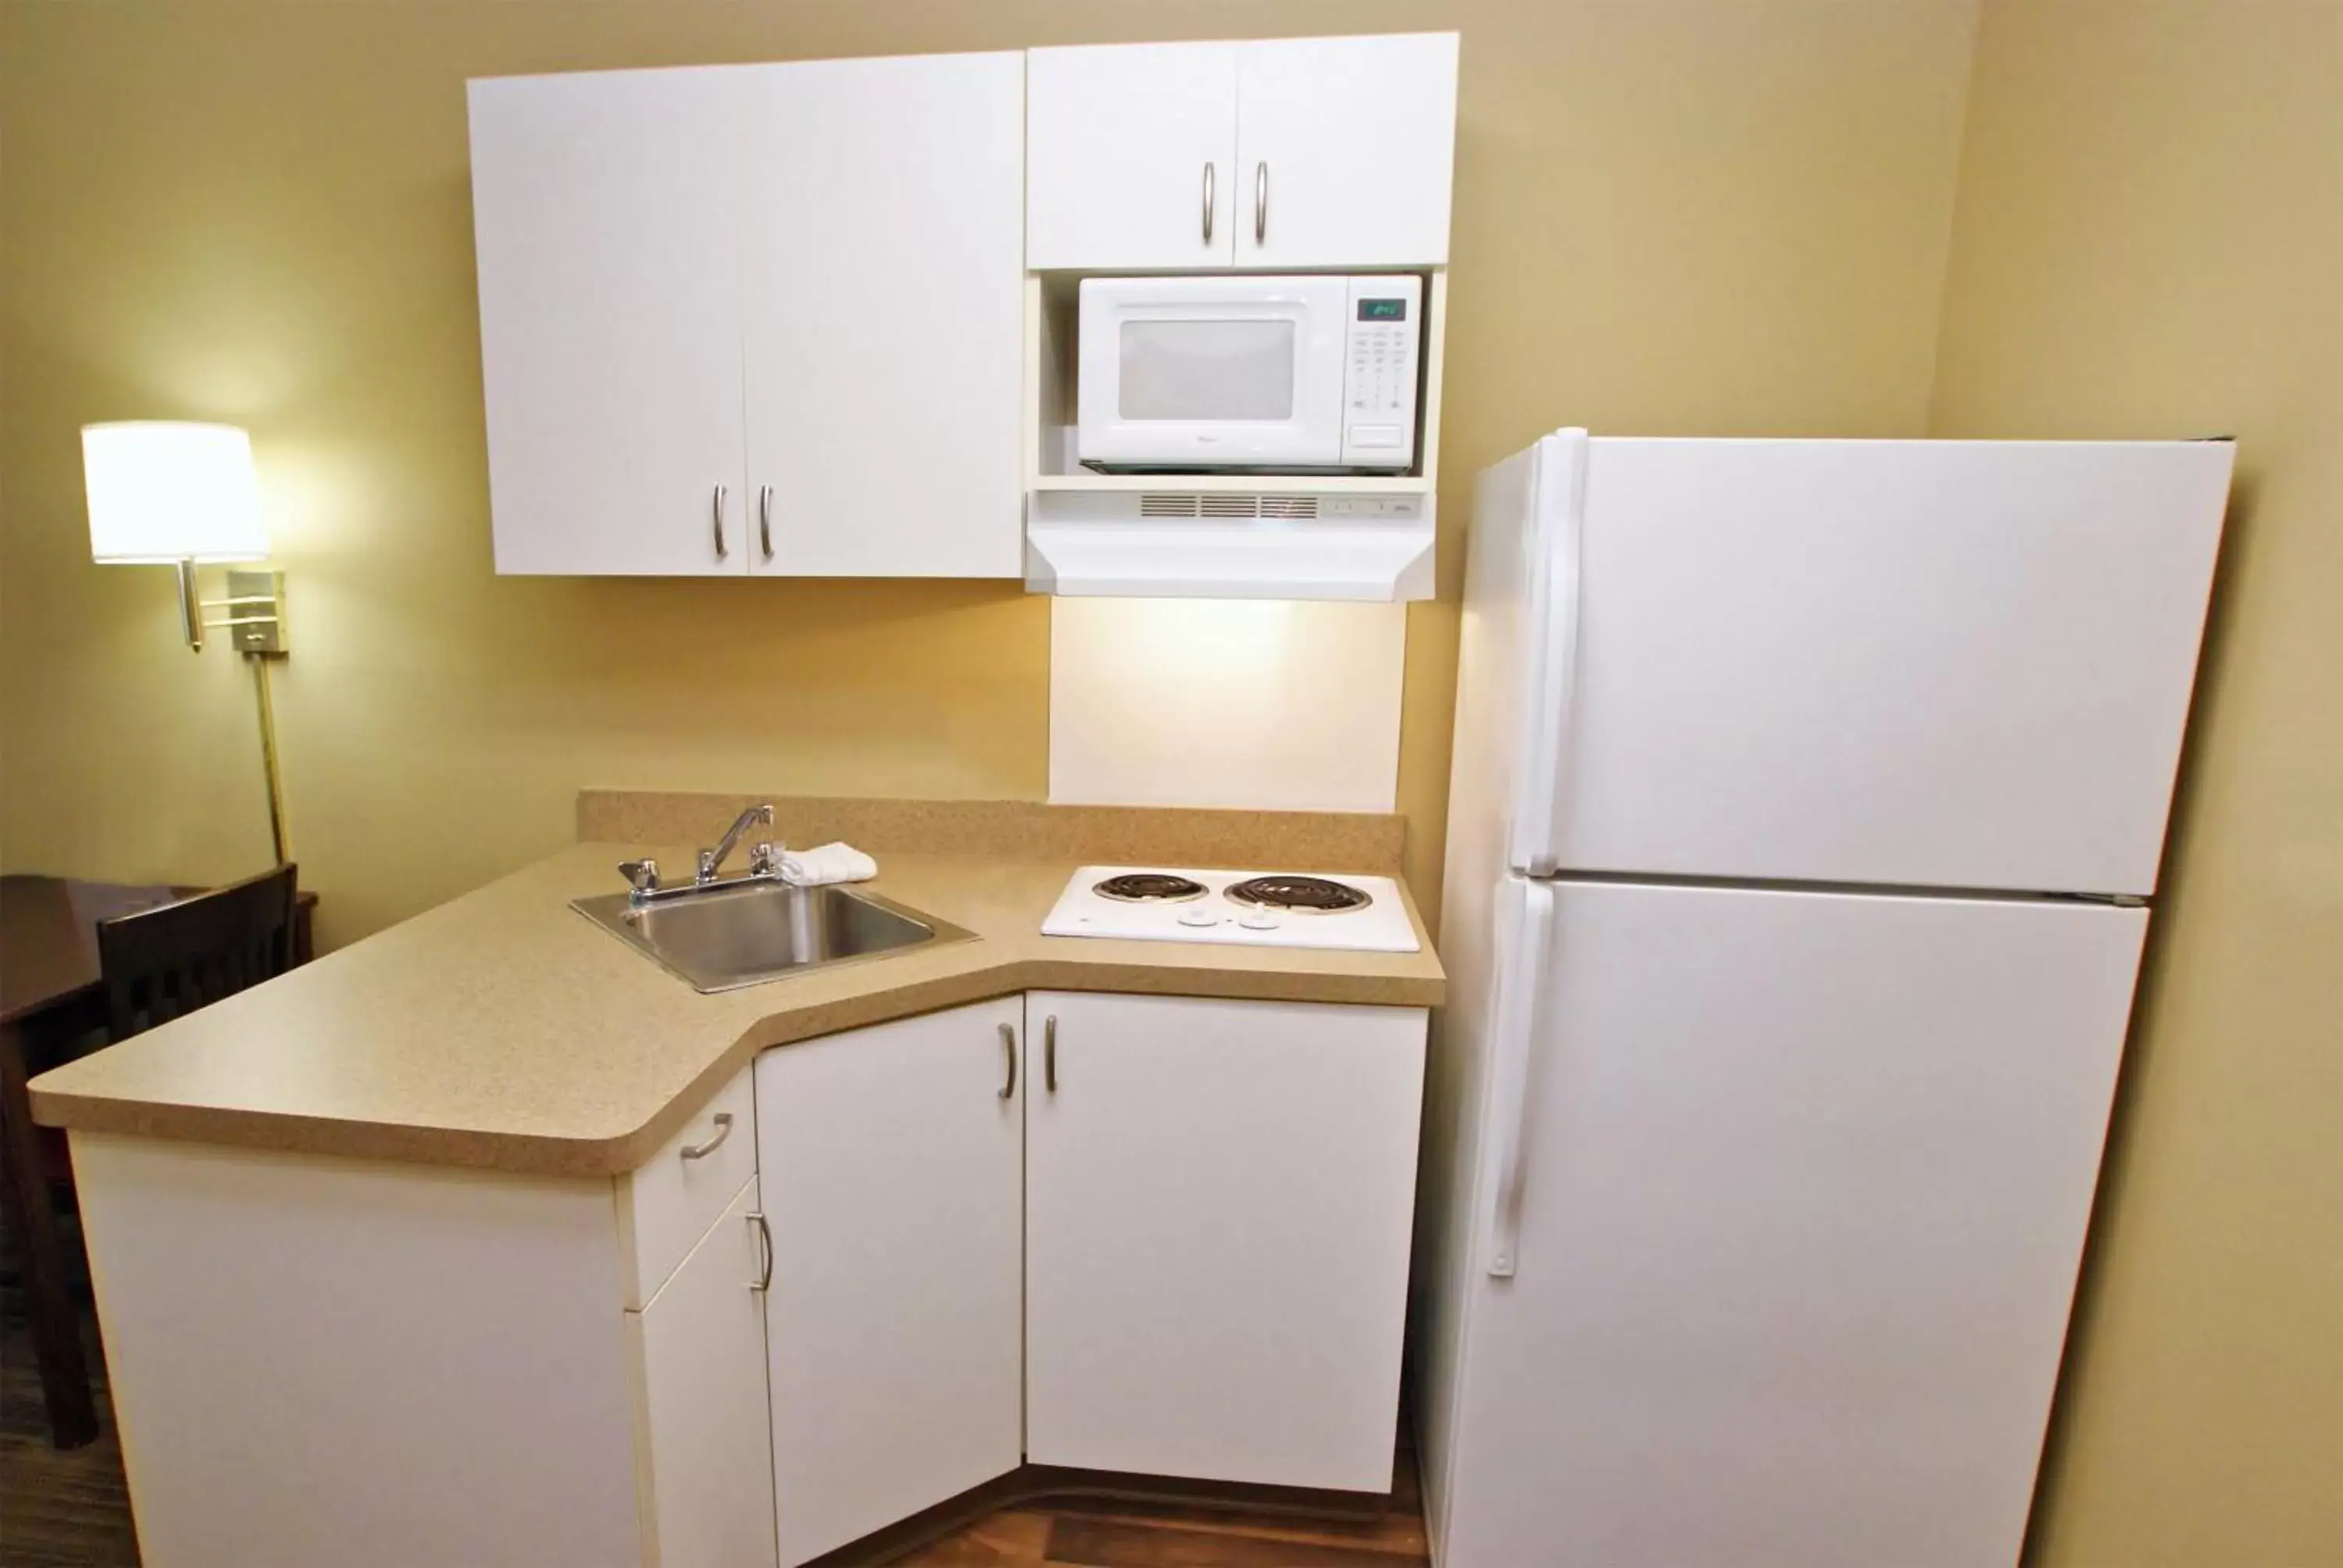 Kitchen or kitchenette, Kitchen/Kitchenette in Extended Stay America Suites - Baltimore - Timonium